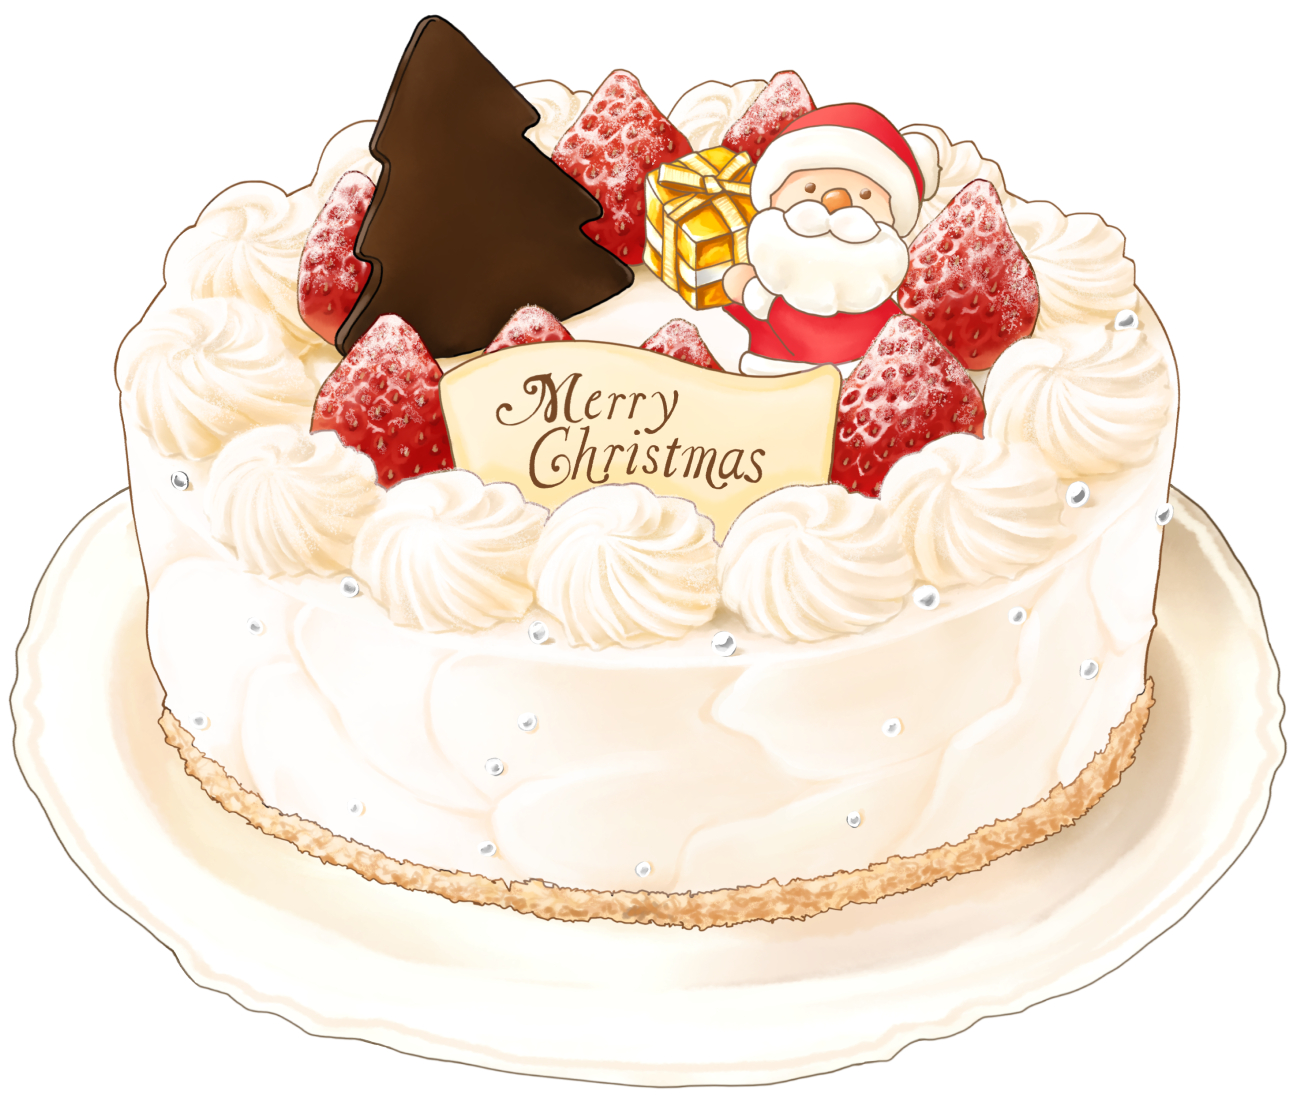 クリスマスケーキ おいしそうなフリーイラスト素材屋 Oishiso オイシソ